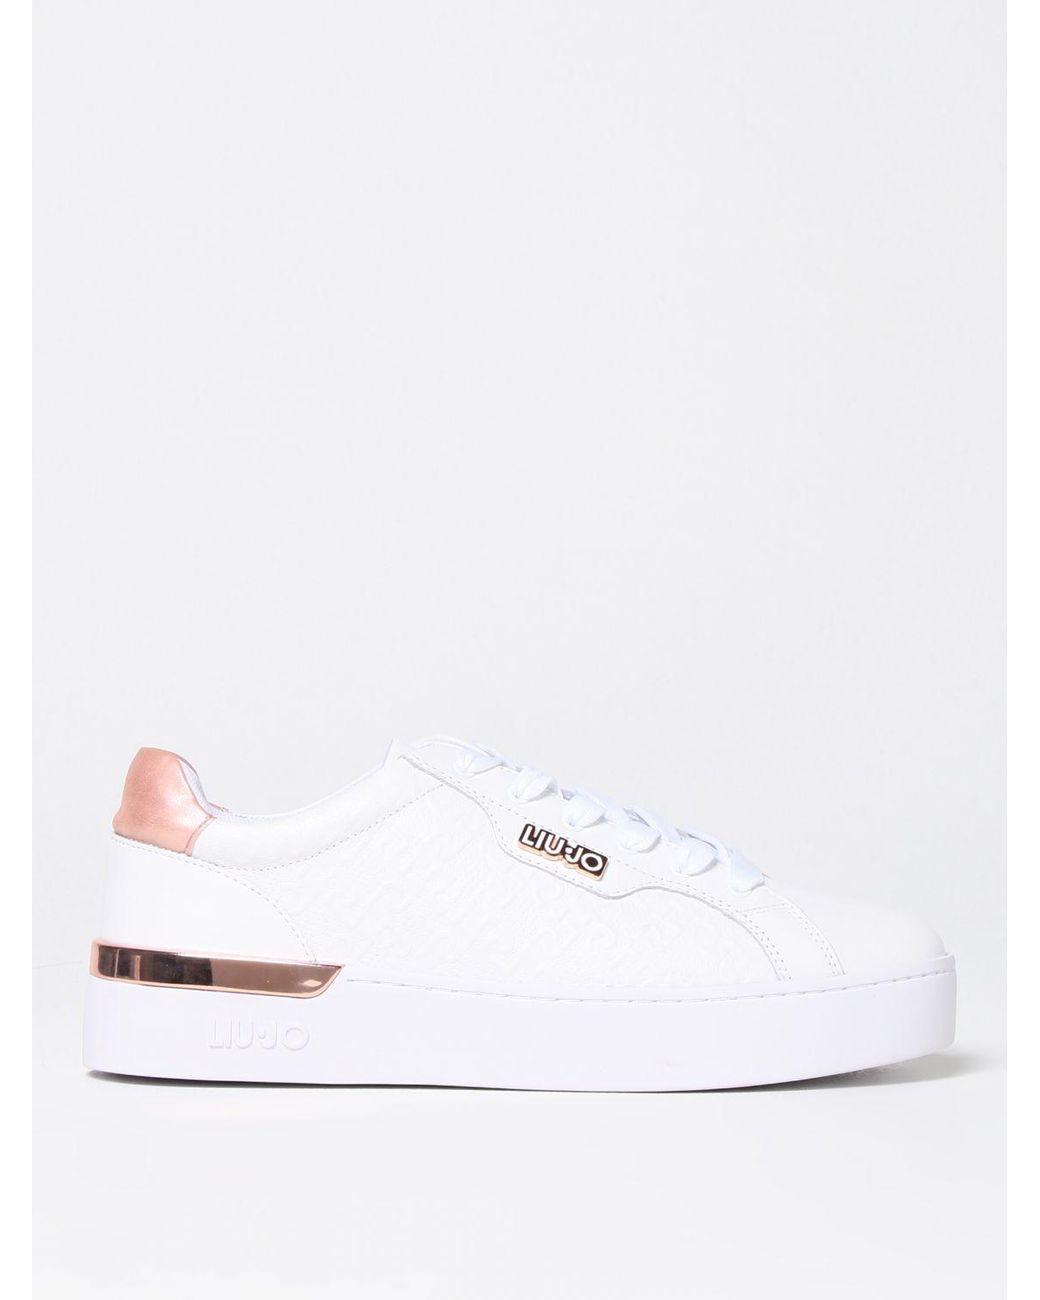 Liu Jo Sneakers in White | Lyst UK